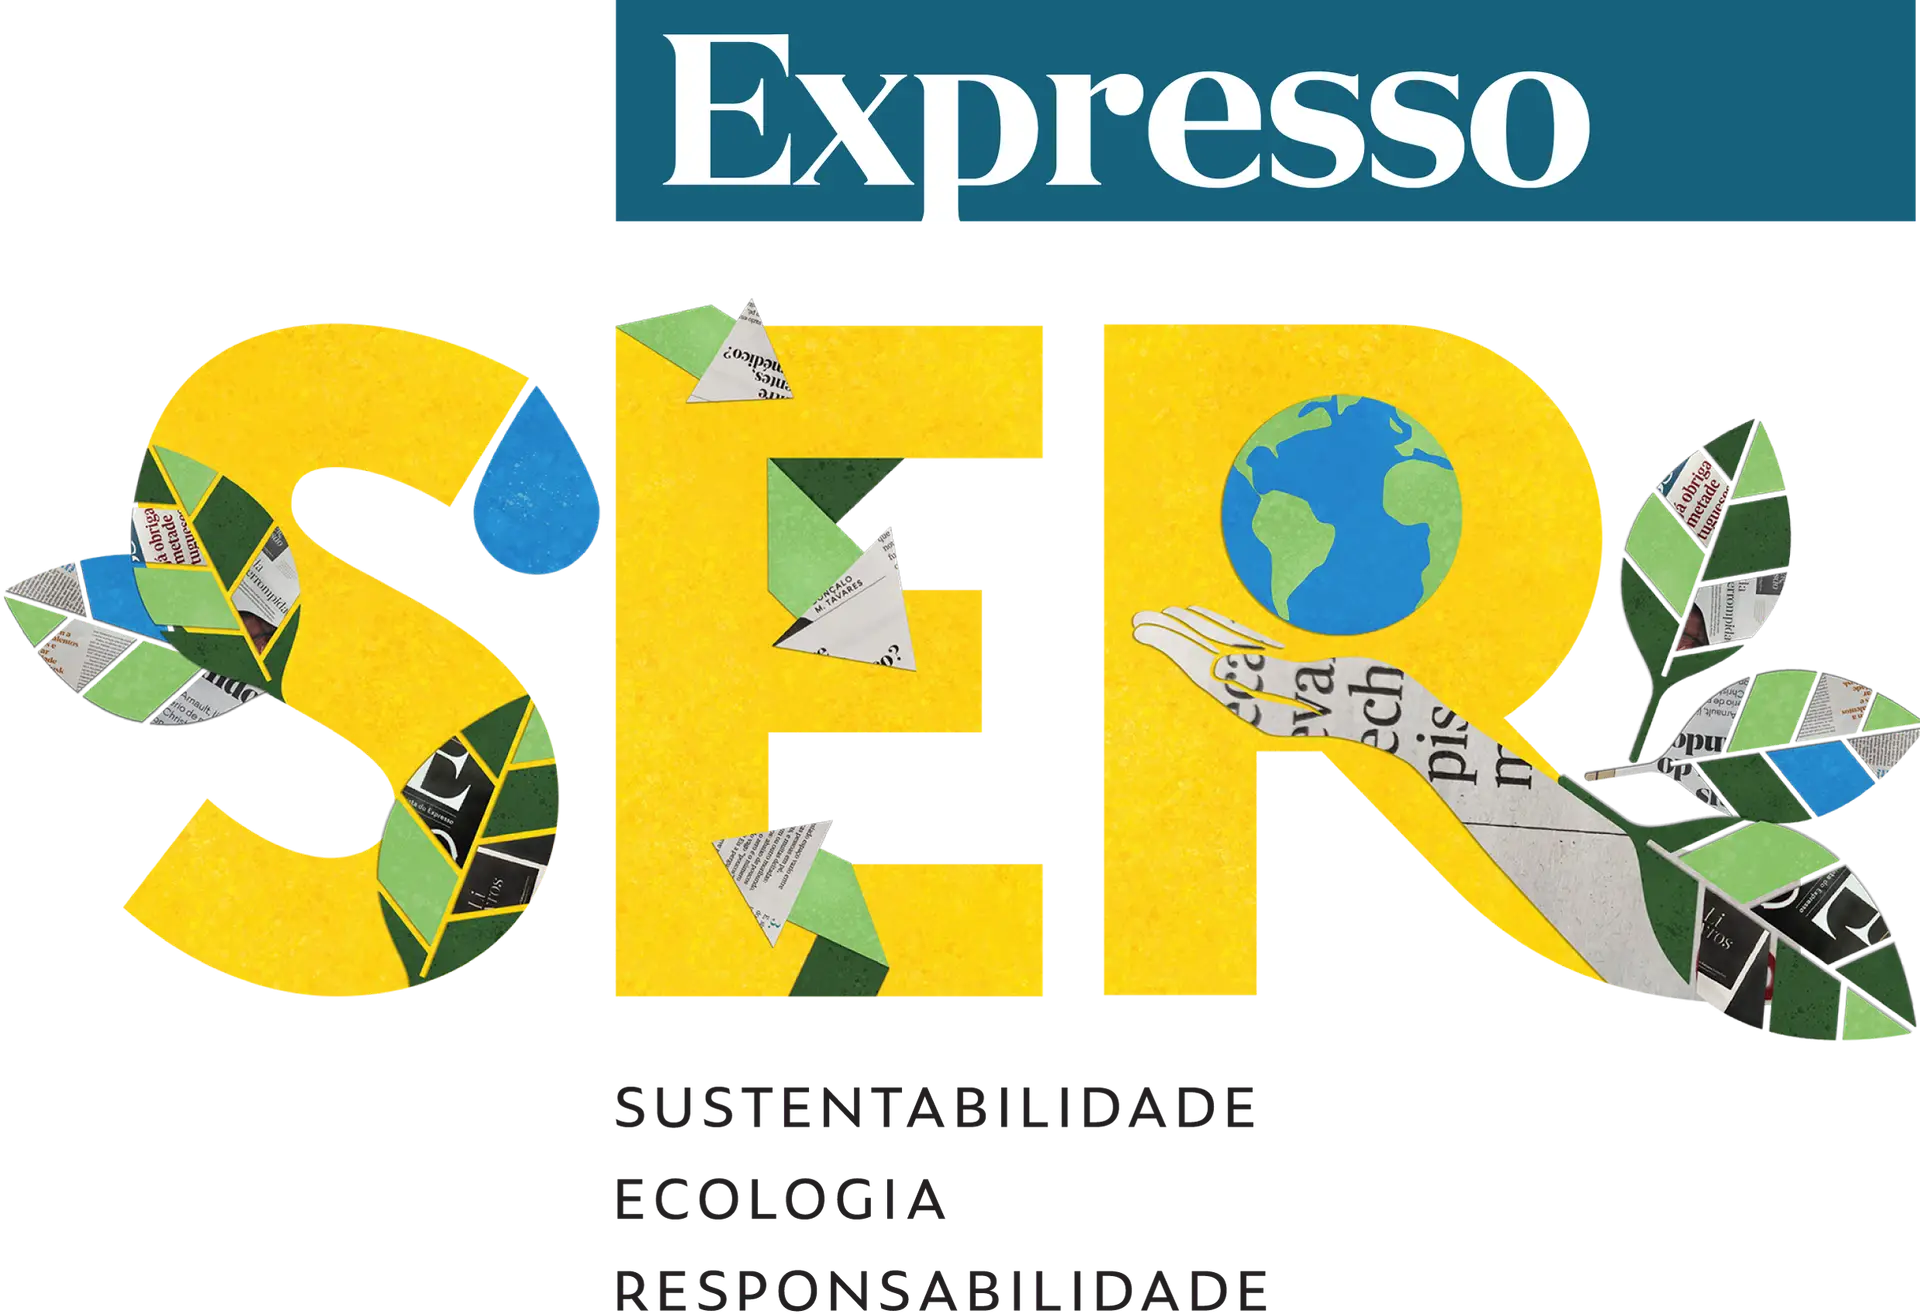 Expresso lança SER, que passará a reunir conteúdos sobre sustentabilidade